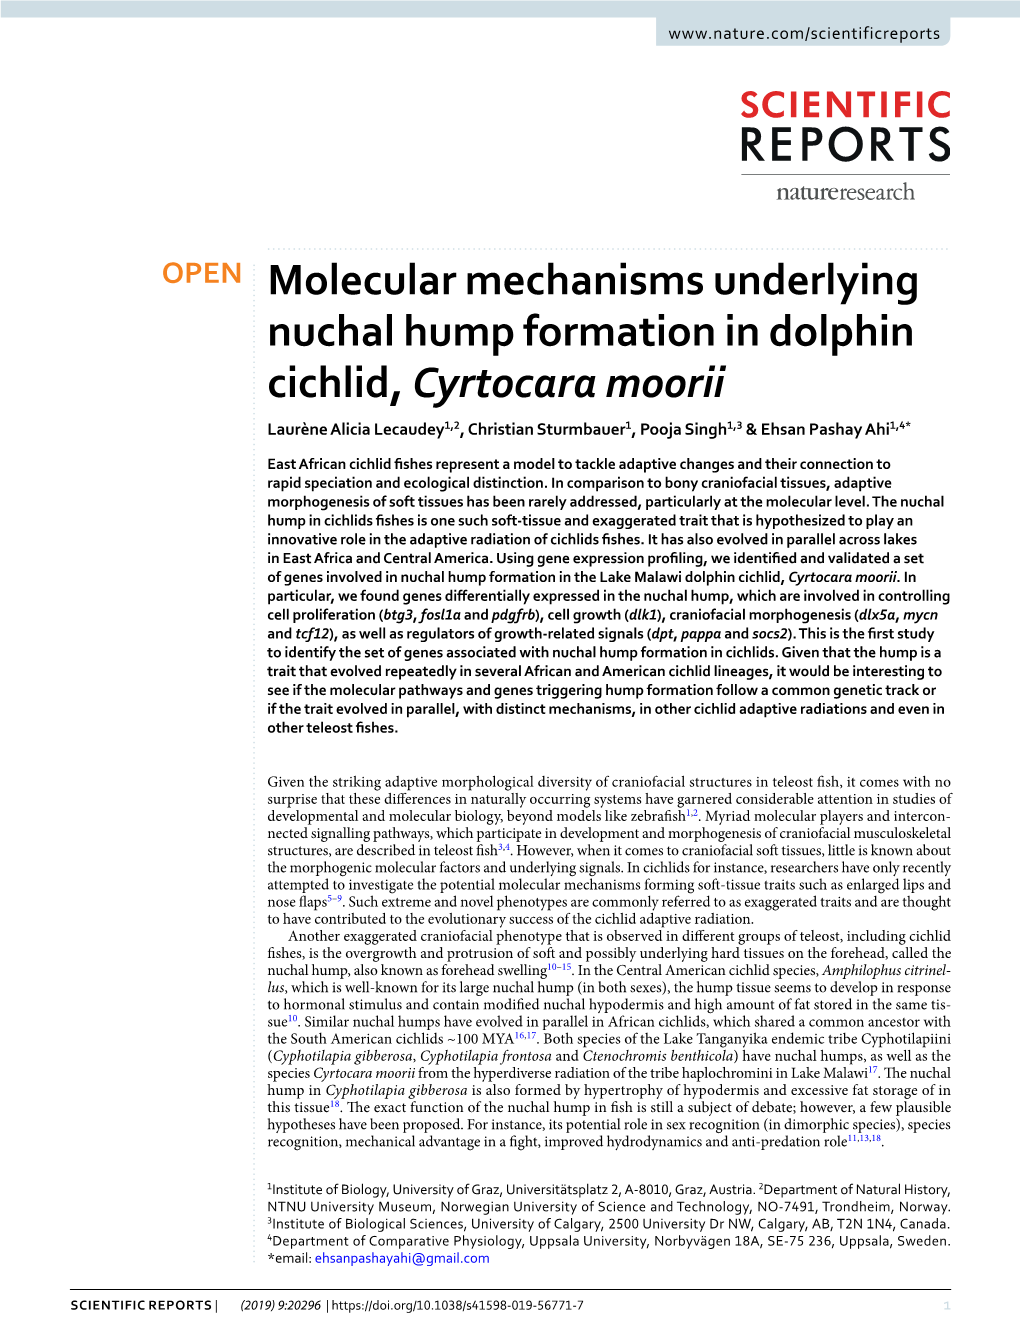 Molecular Mechanisms Underlying Nuchal Hump Formation in Dolphin Cichlid, Cyrtocara Moorii